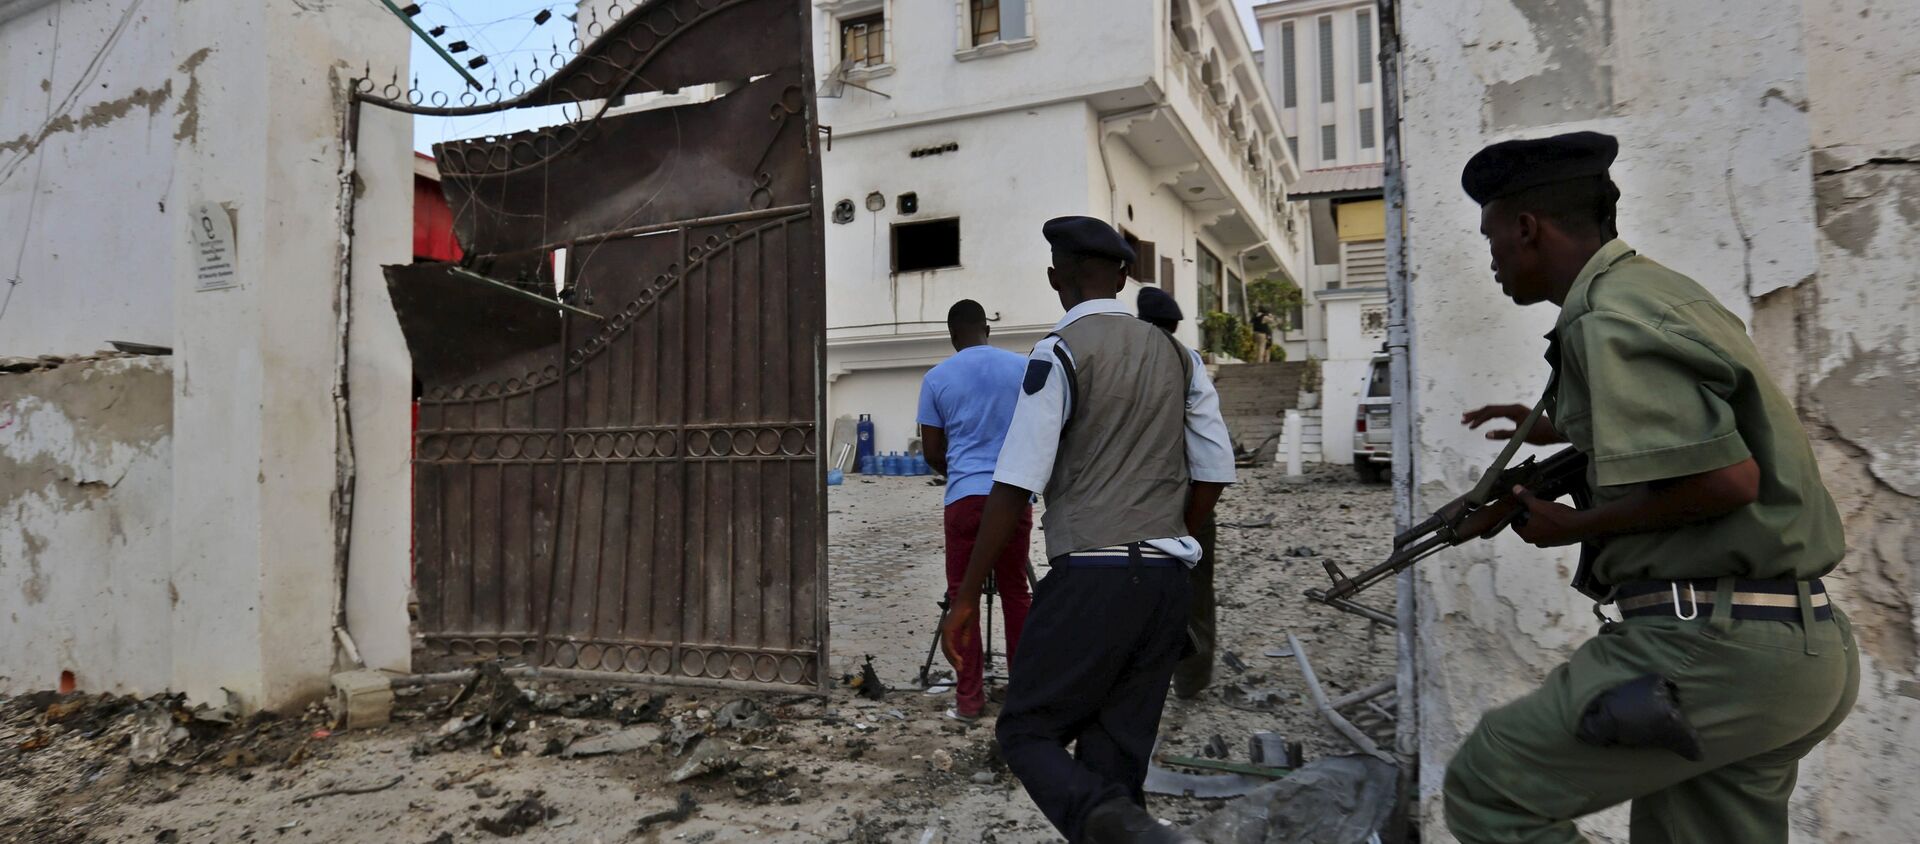 الشرطة الصومالية بعد حادث ارهابي لحركة الشباب في مارس الماضي - سبوتنيك عربي, 1920, 13.03.2019